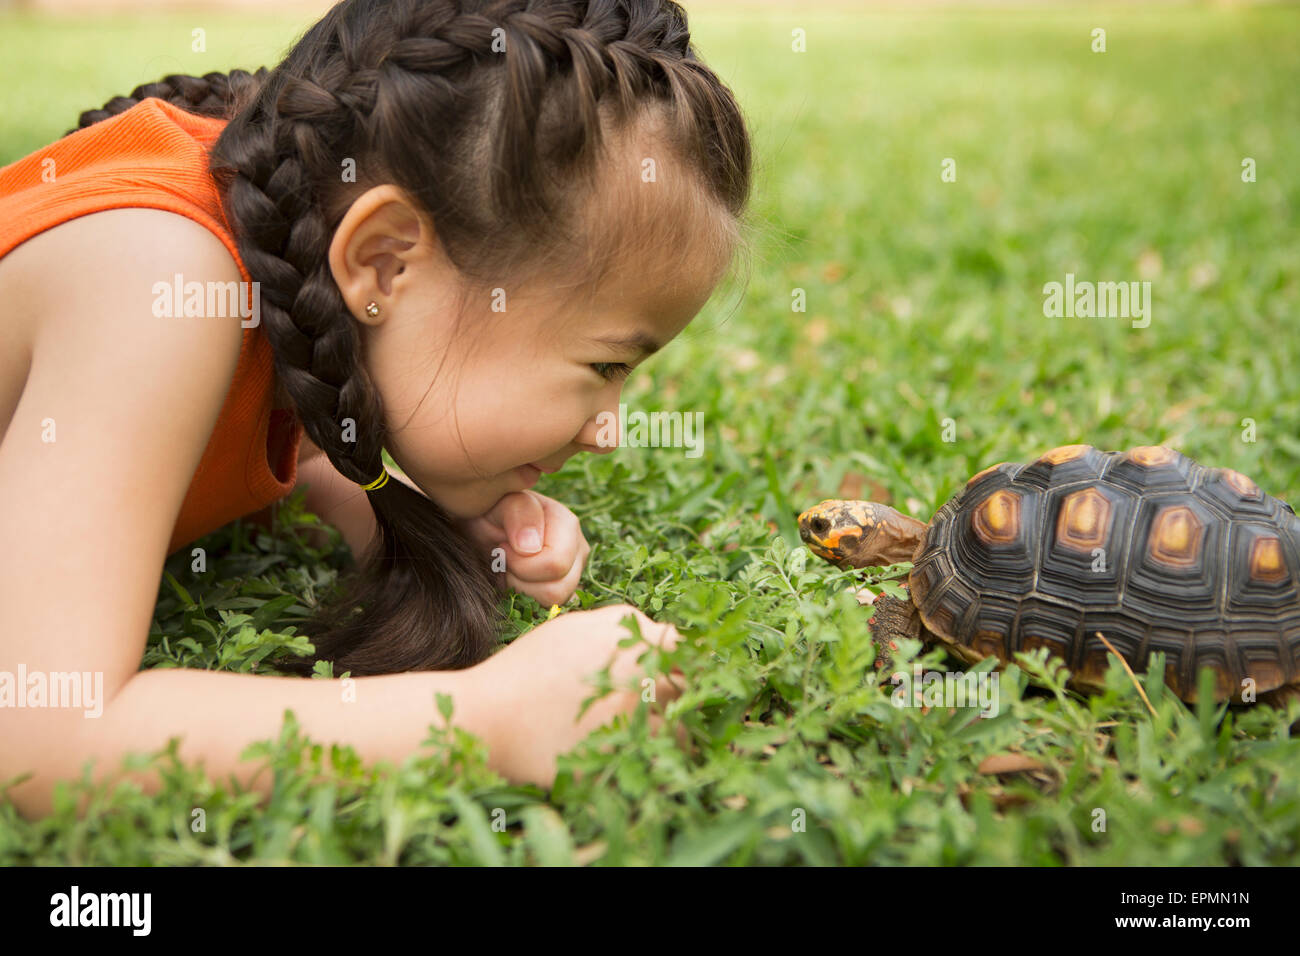 Une jeune fille couchée sur l'herbe à la recherche de la tortue. Banque D'Images